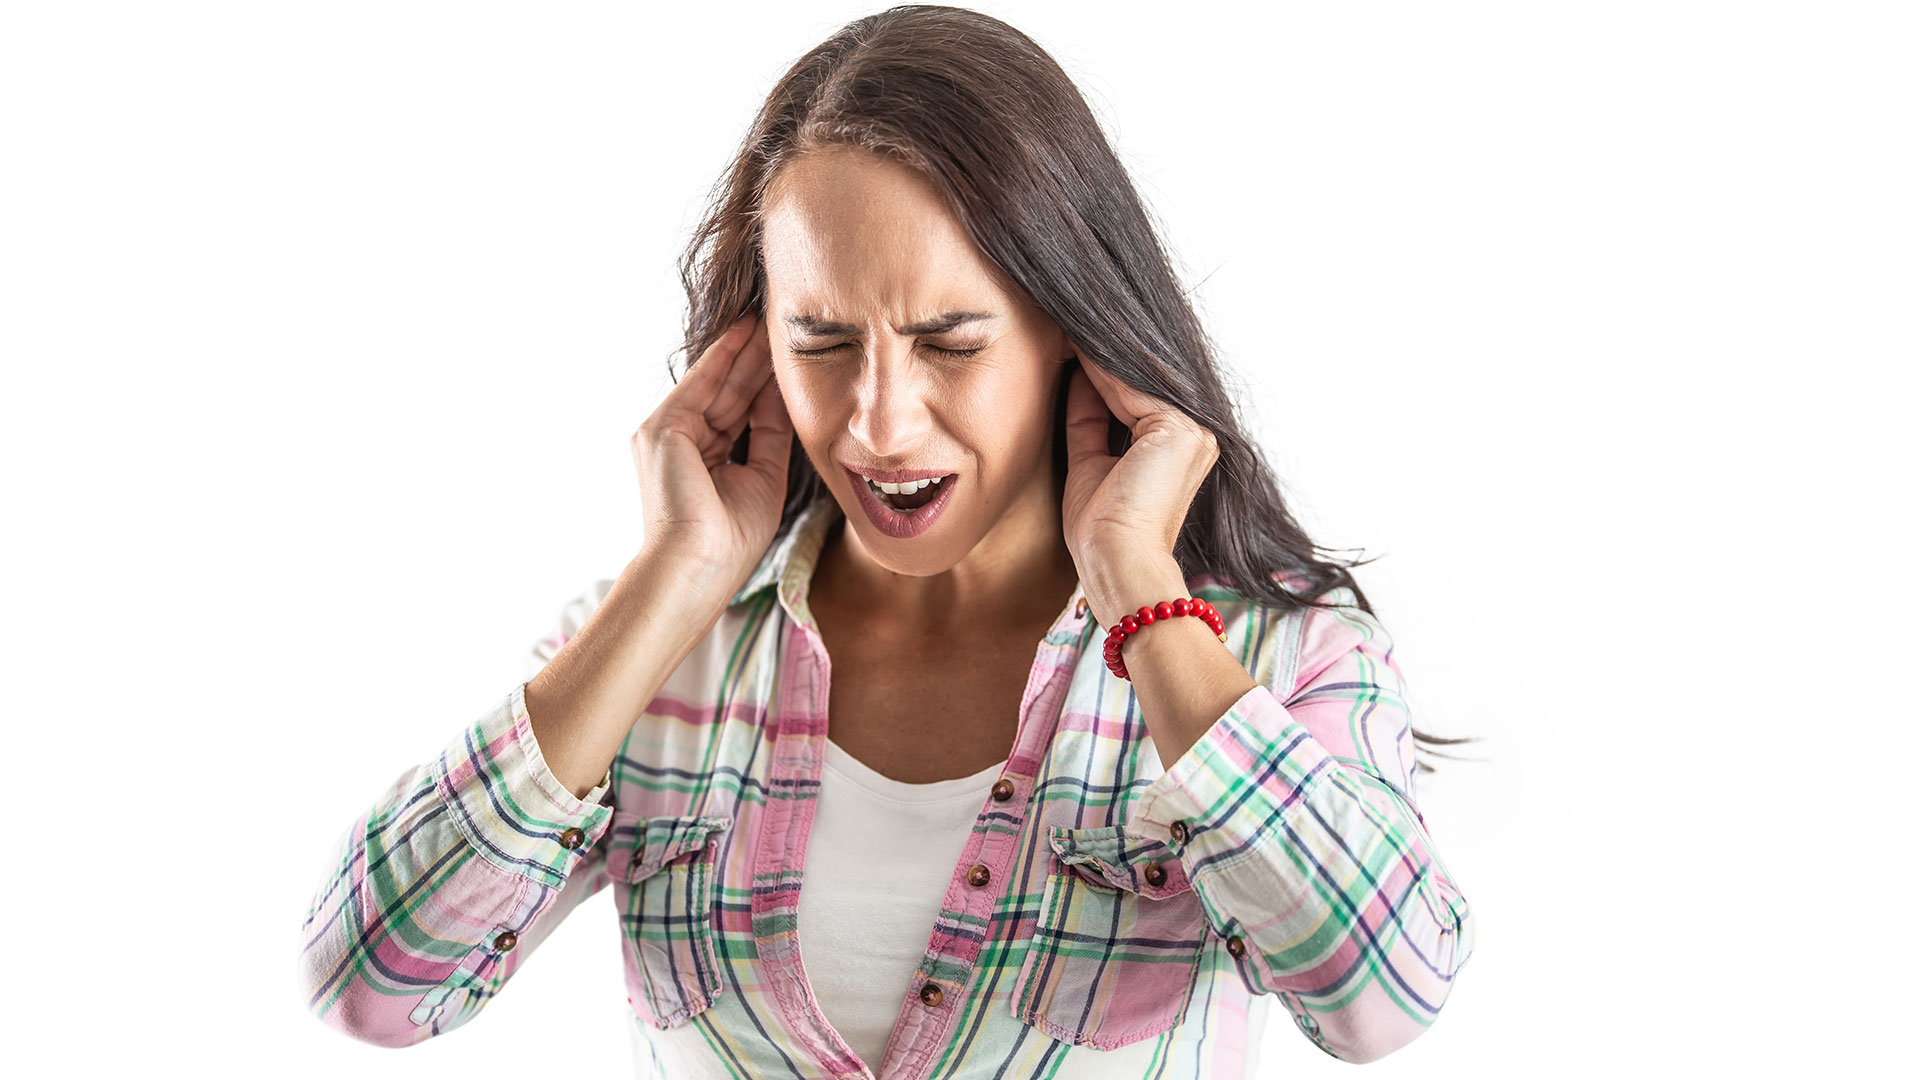 La contaminación sonora causa estrés, fatiga y alteraciones del sueño /